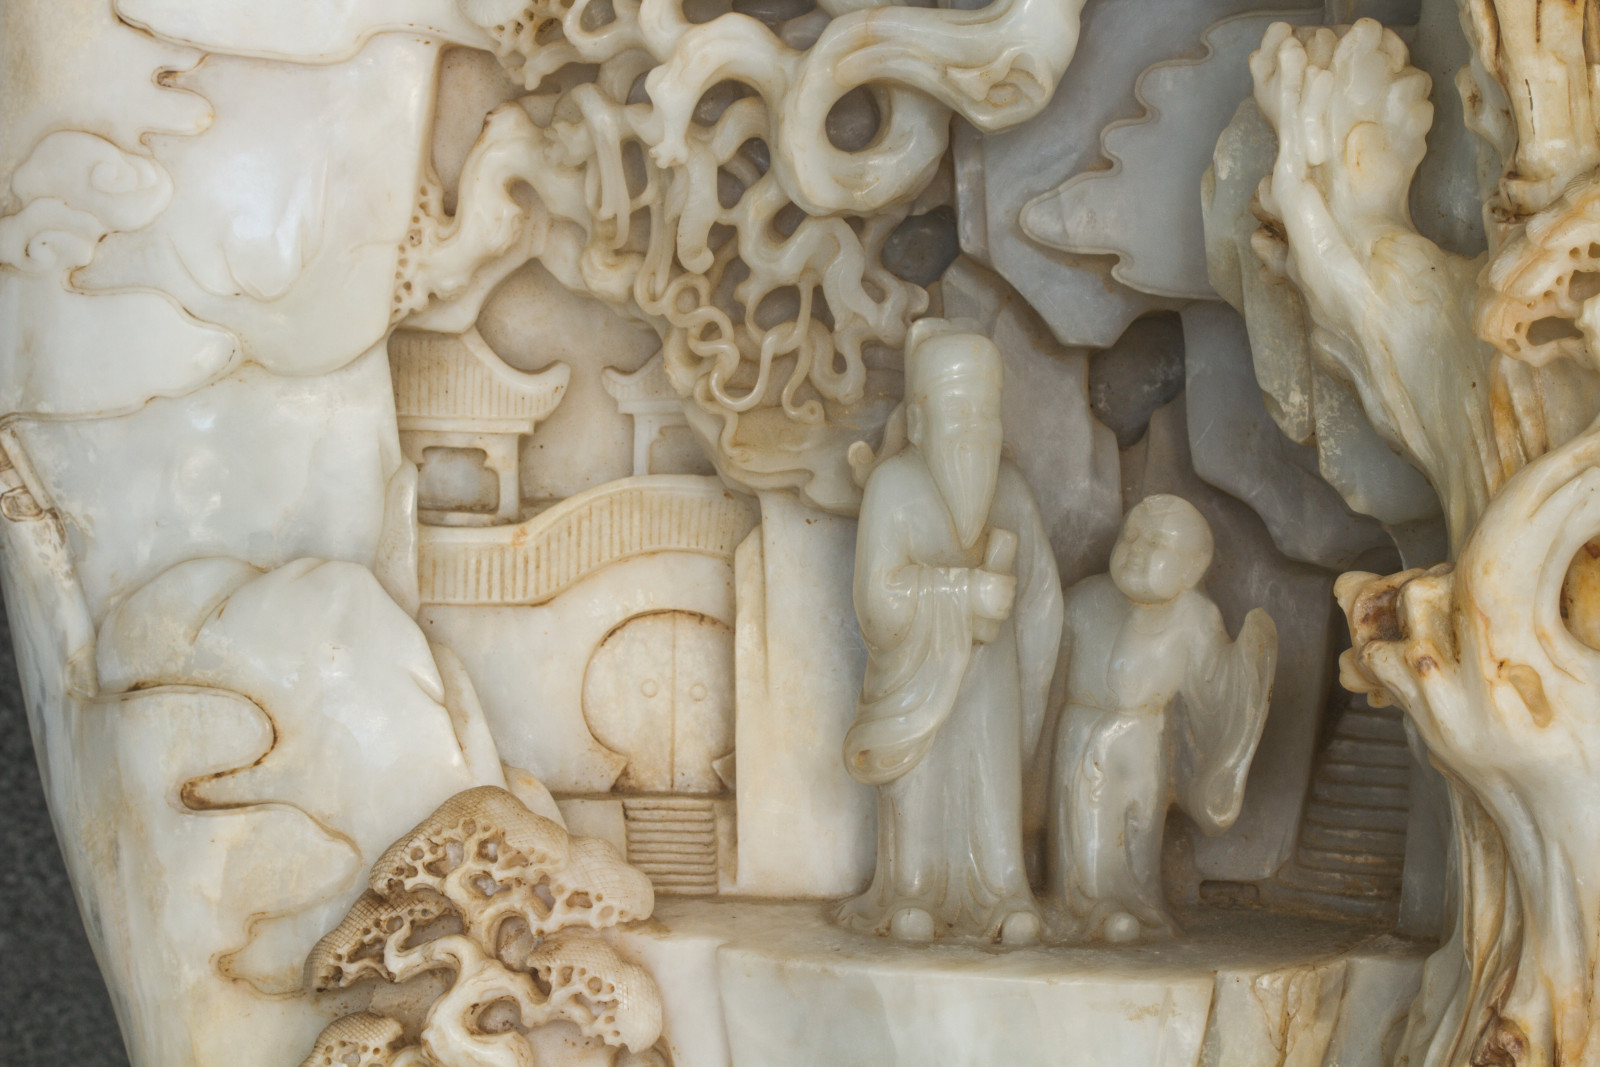 5 – Alabaster figures, Kaga Onsen